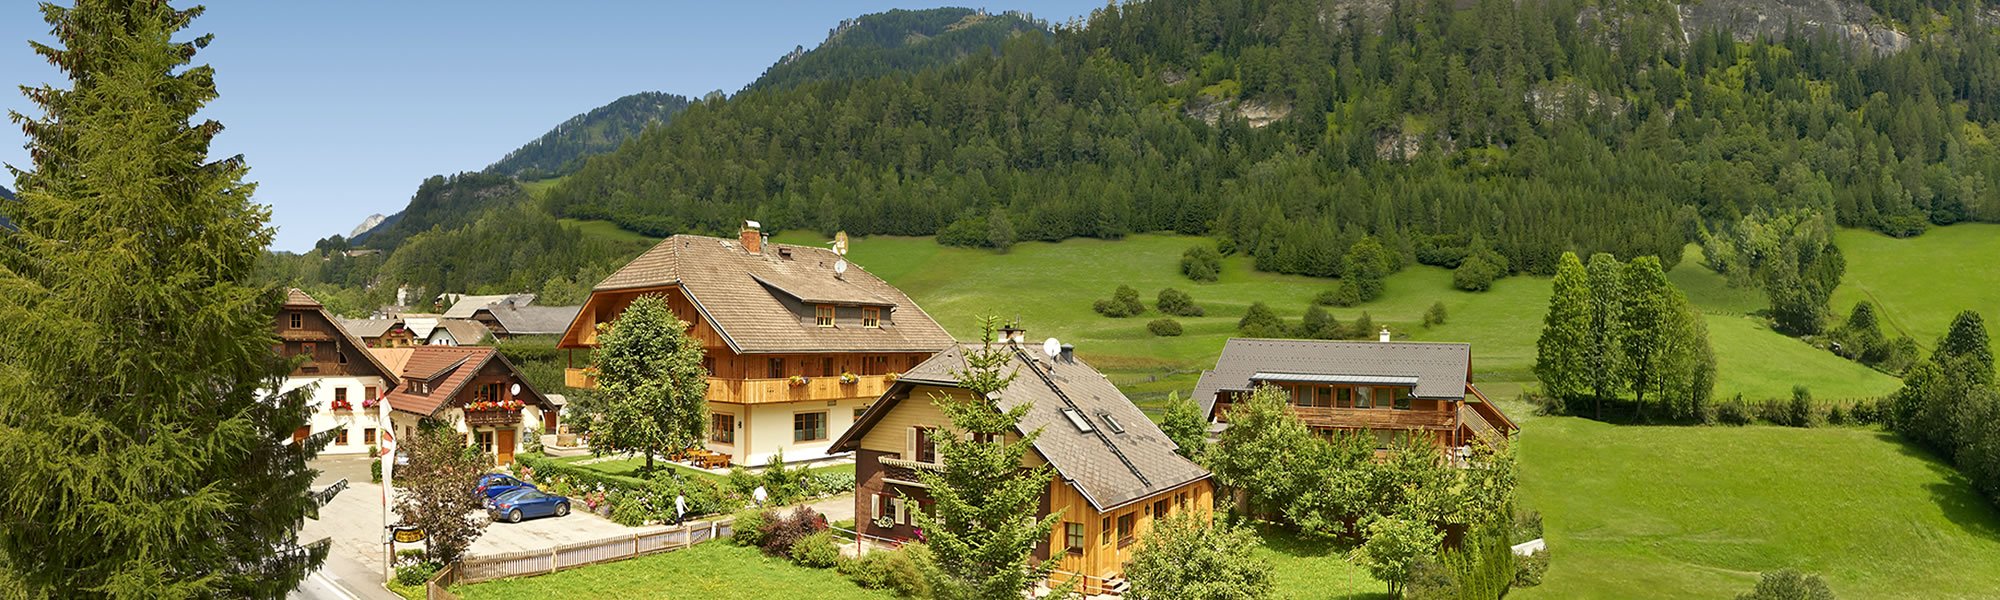 Langgut Blasiwirt, Ihr Landhotel & Familienbauernhof in St. Michael in der Ferienregion Lungau inmitten intakter Natur. Österreich-Urlaub am Bauernhof.